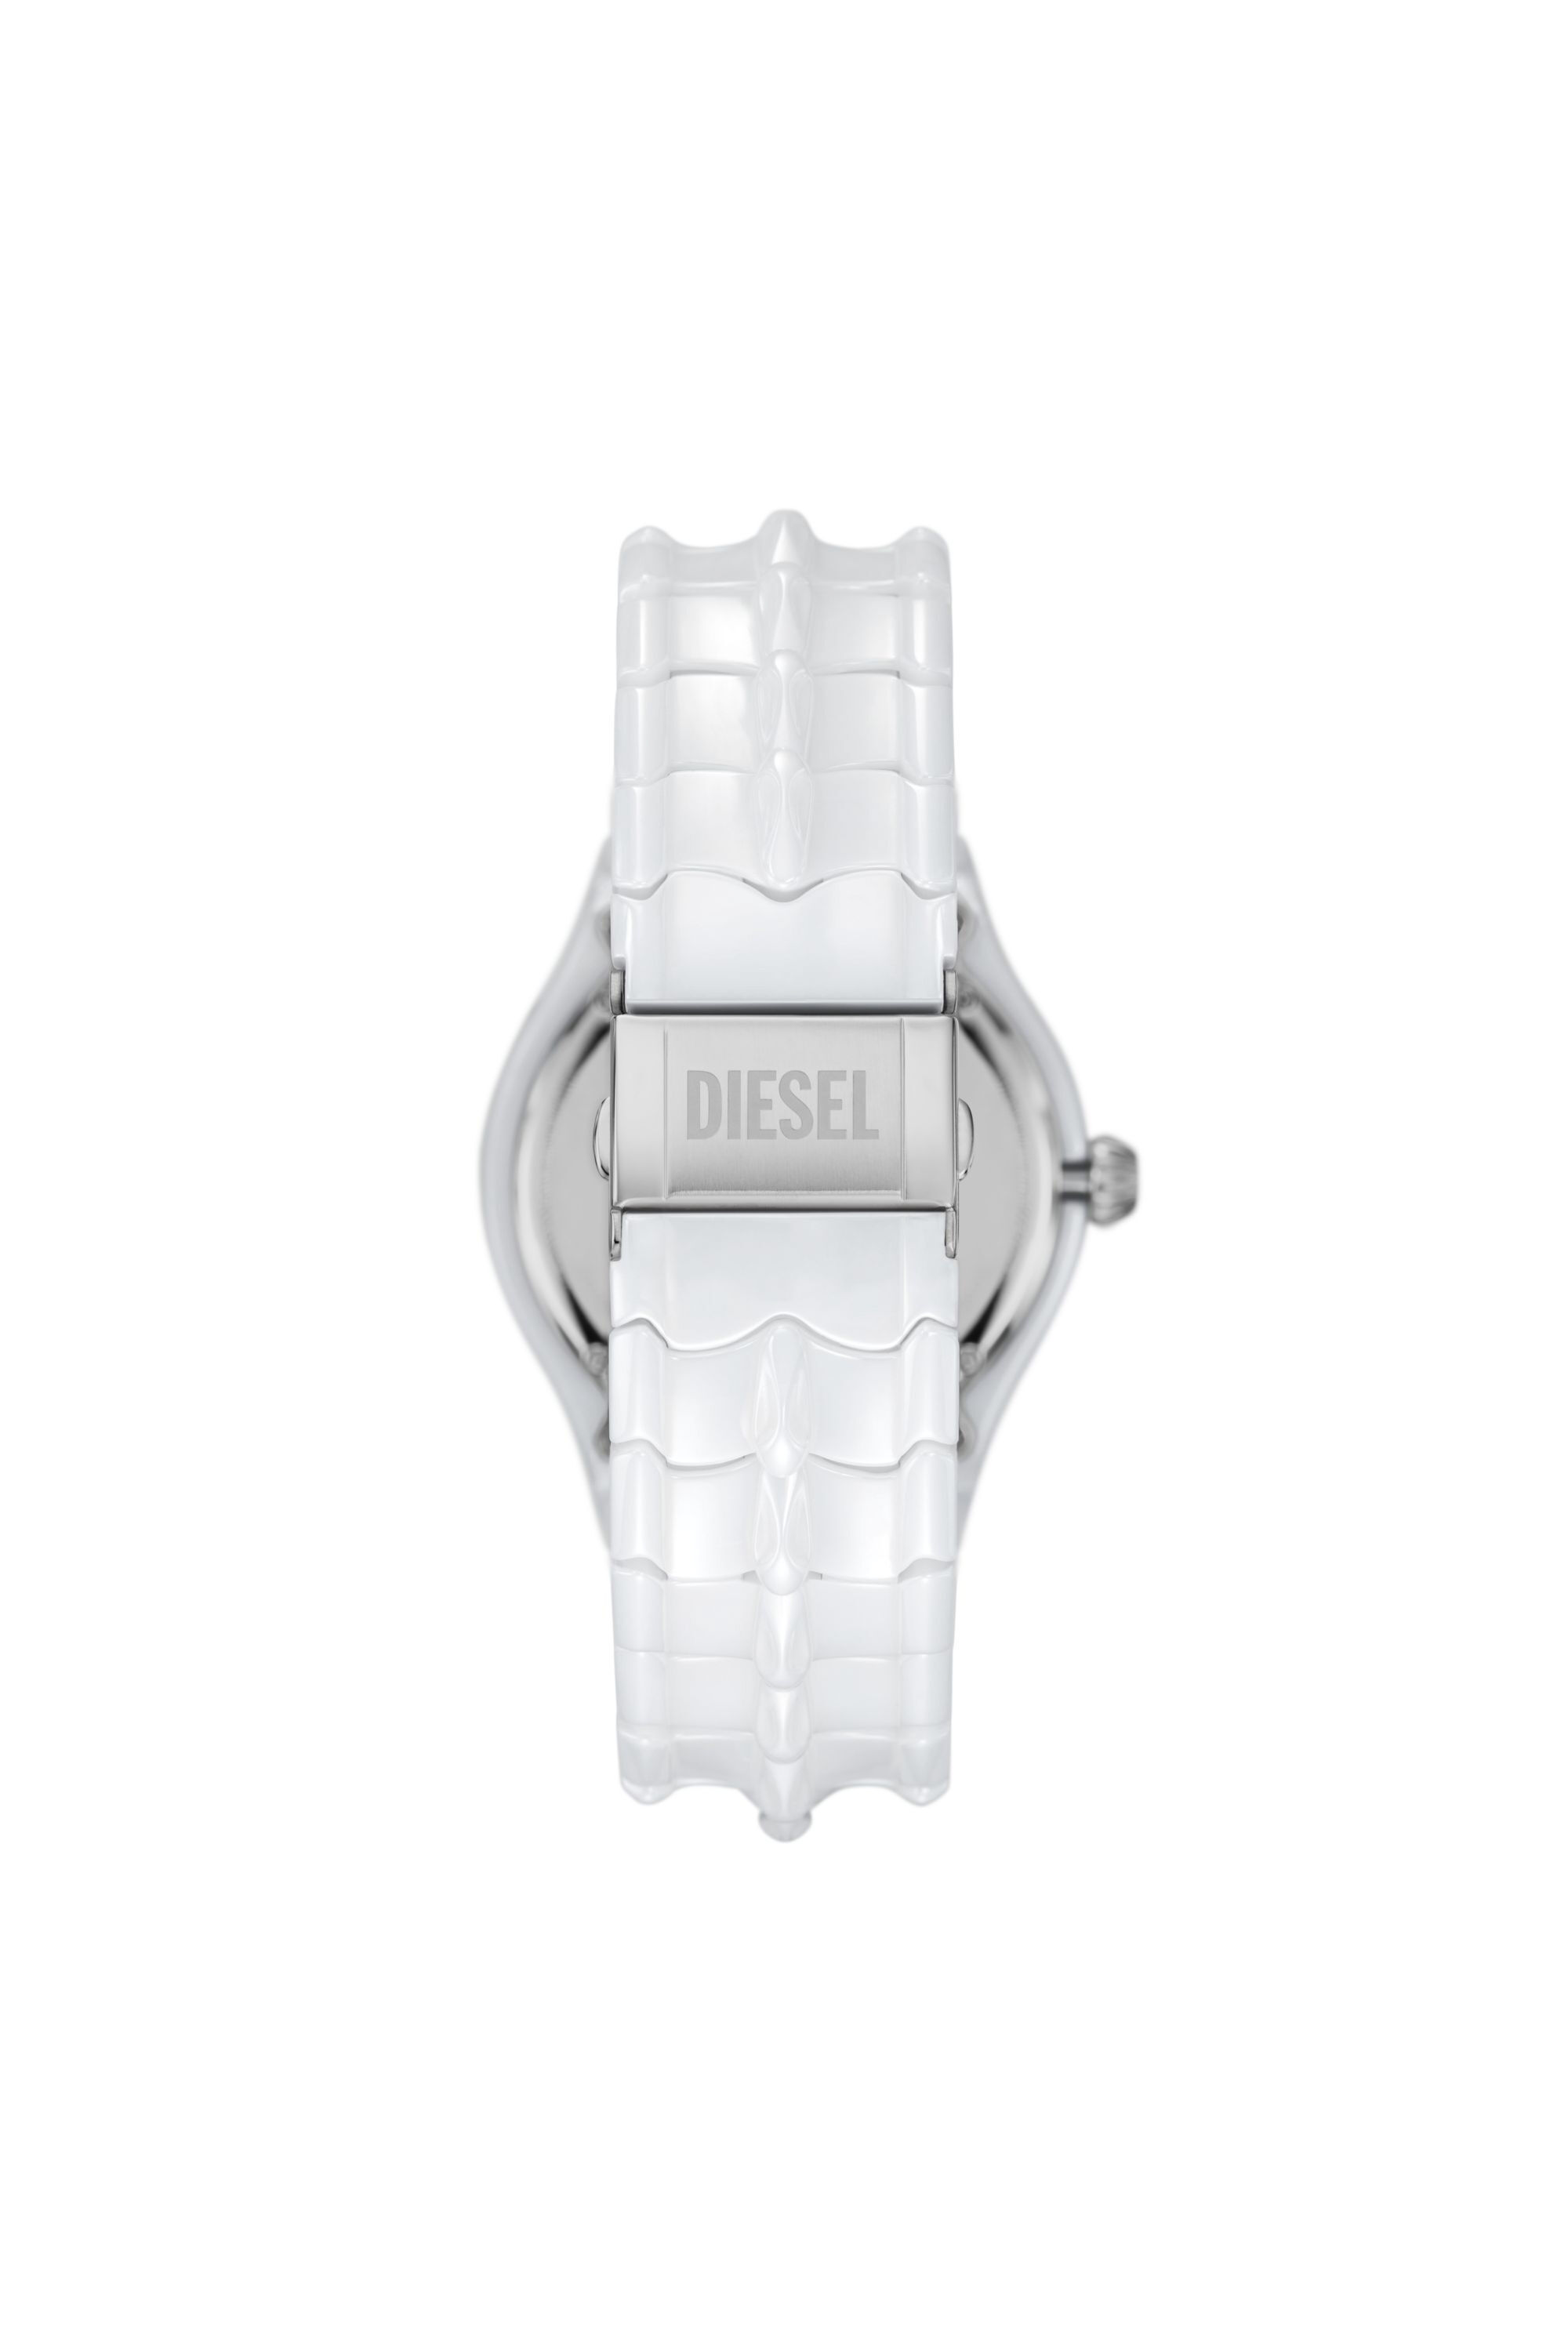 Diesel - DZ2197, Male Vert three-hand date white ceramic watch in White - Image 2